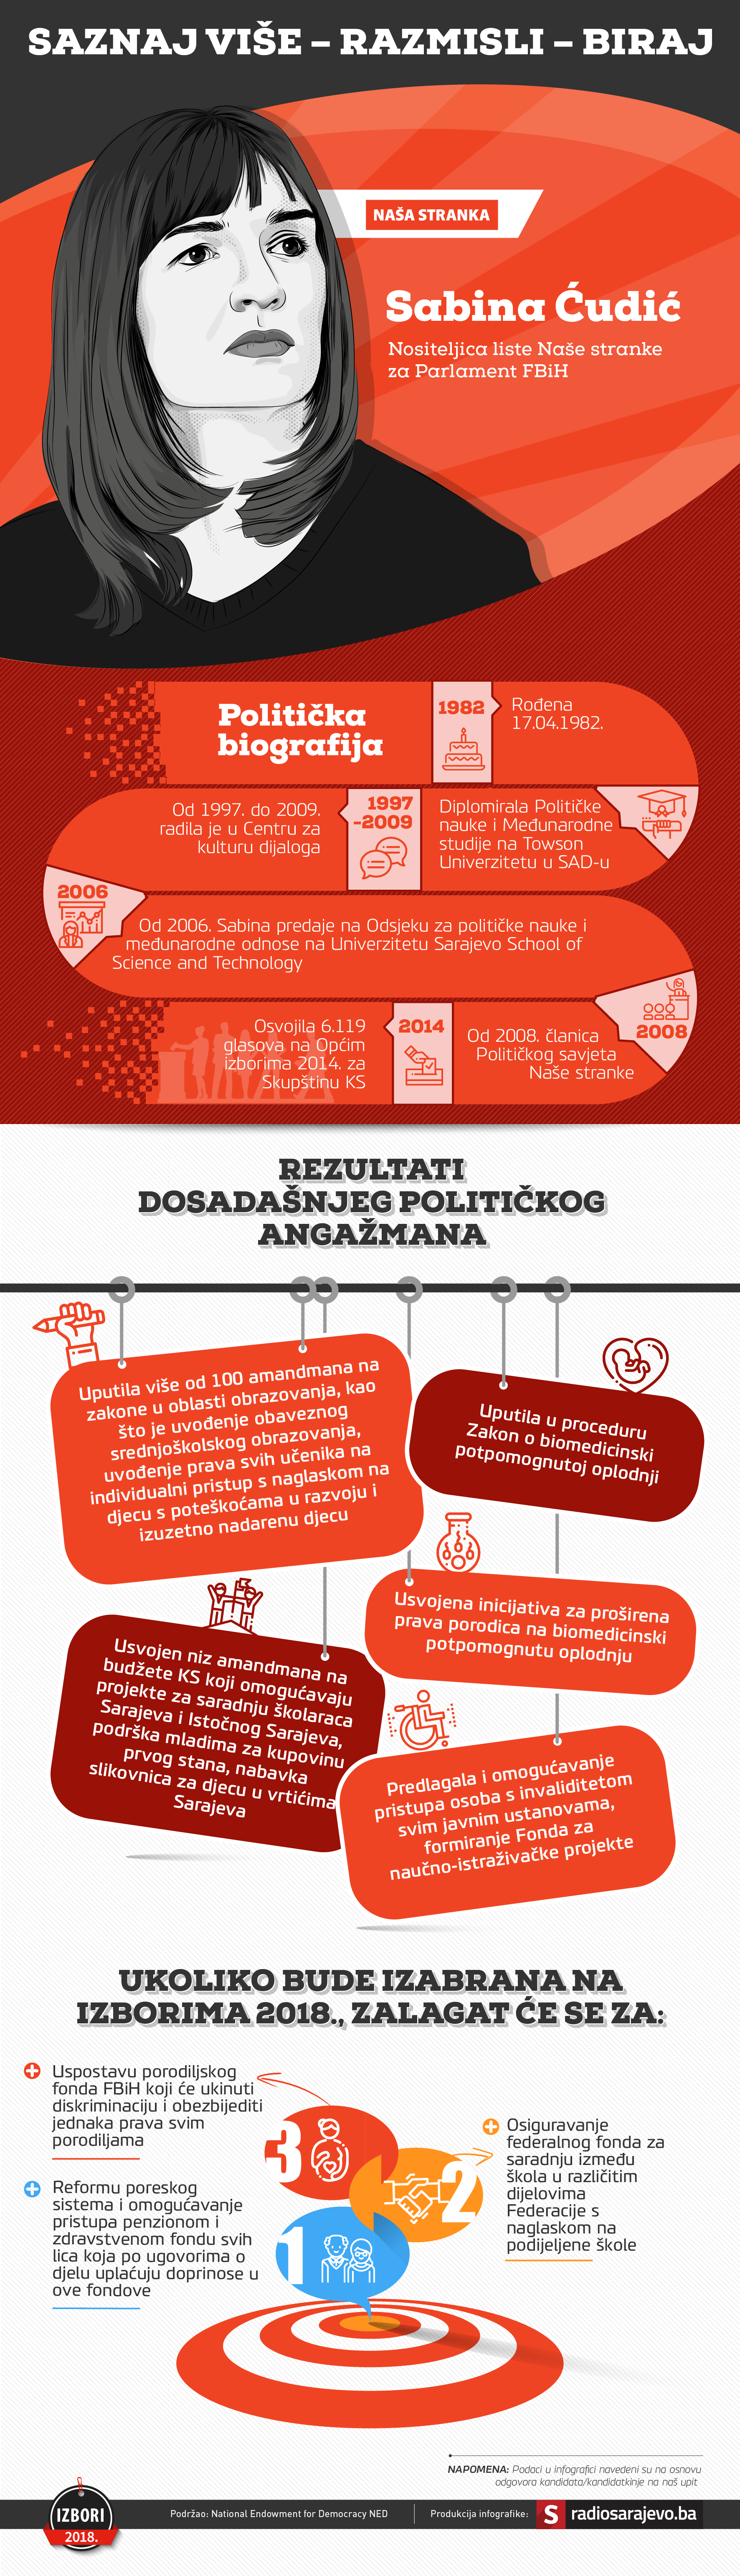 sabina_cudic_politicka_infografika2018_1.png - undefined